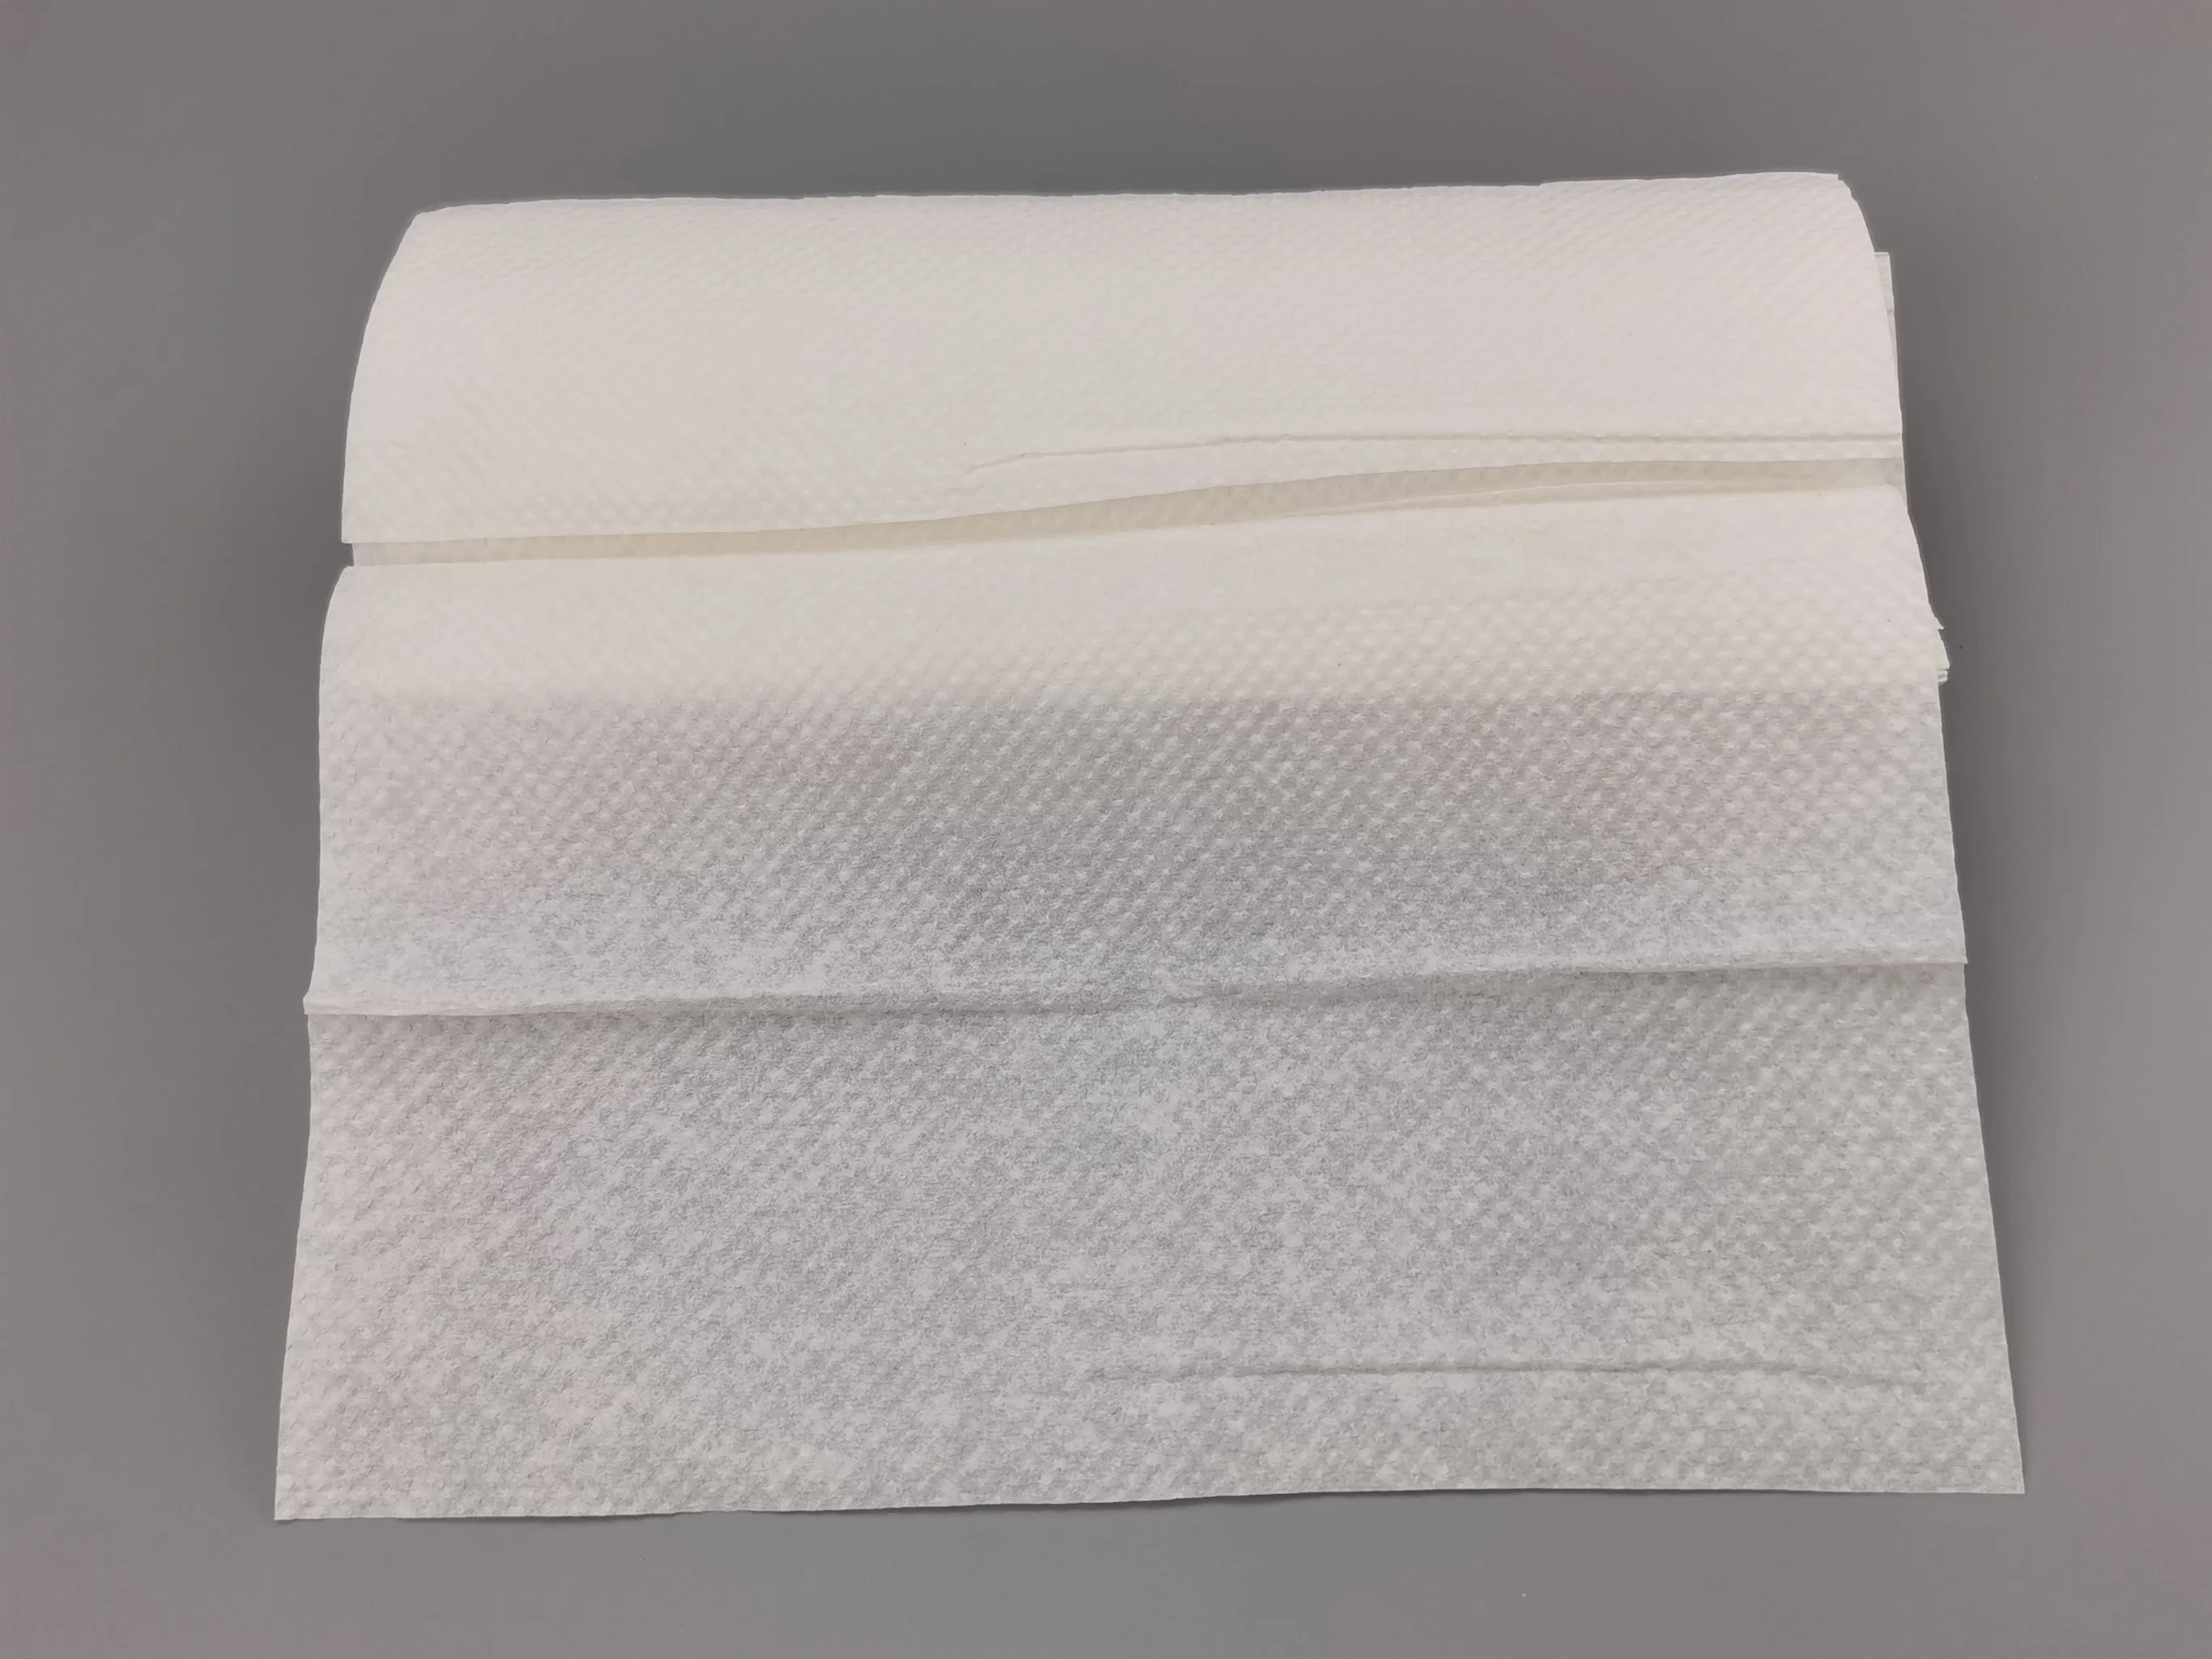 Weiß Hand Tissue Papier Startseite, Wc, Badezimmer Servietten